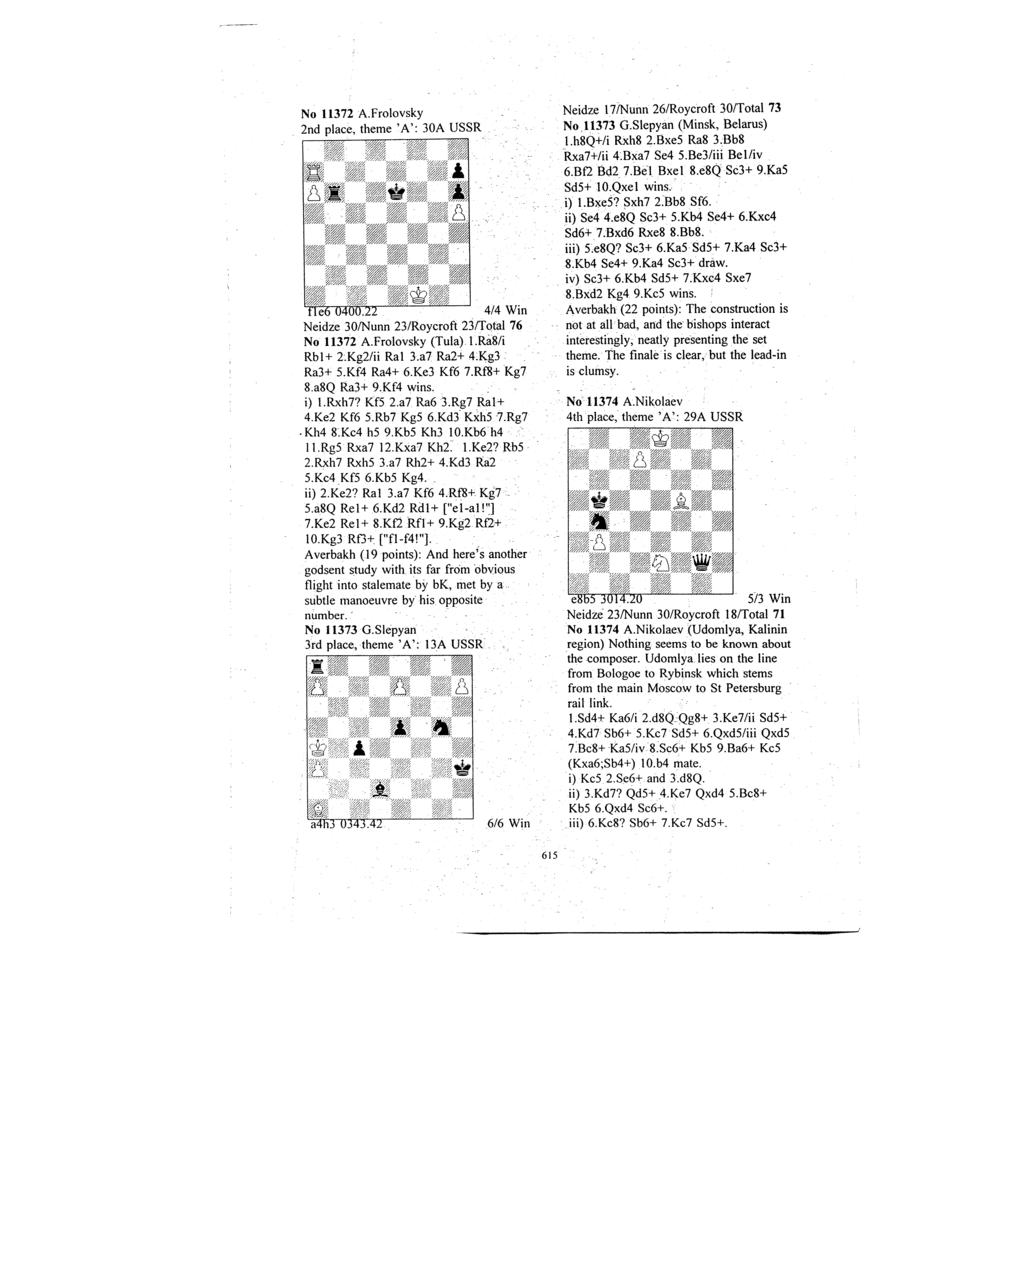 No 11372 A.Frolovsky 2nd place, theme 'A': 30A USSR tle6 0400.22 4/4 Win Neidze 30/Nunn 23/Roycroft 23/Total 76 No 11372 A.Frolovsky (Tula) l.ra8/i Rbl+ 2.Kg2/ii Ral 3.a7 Ra2+ 4;Rg3: Ra3+ 5.